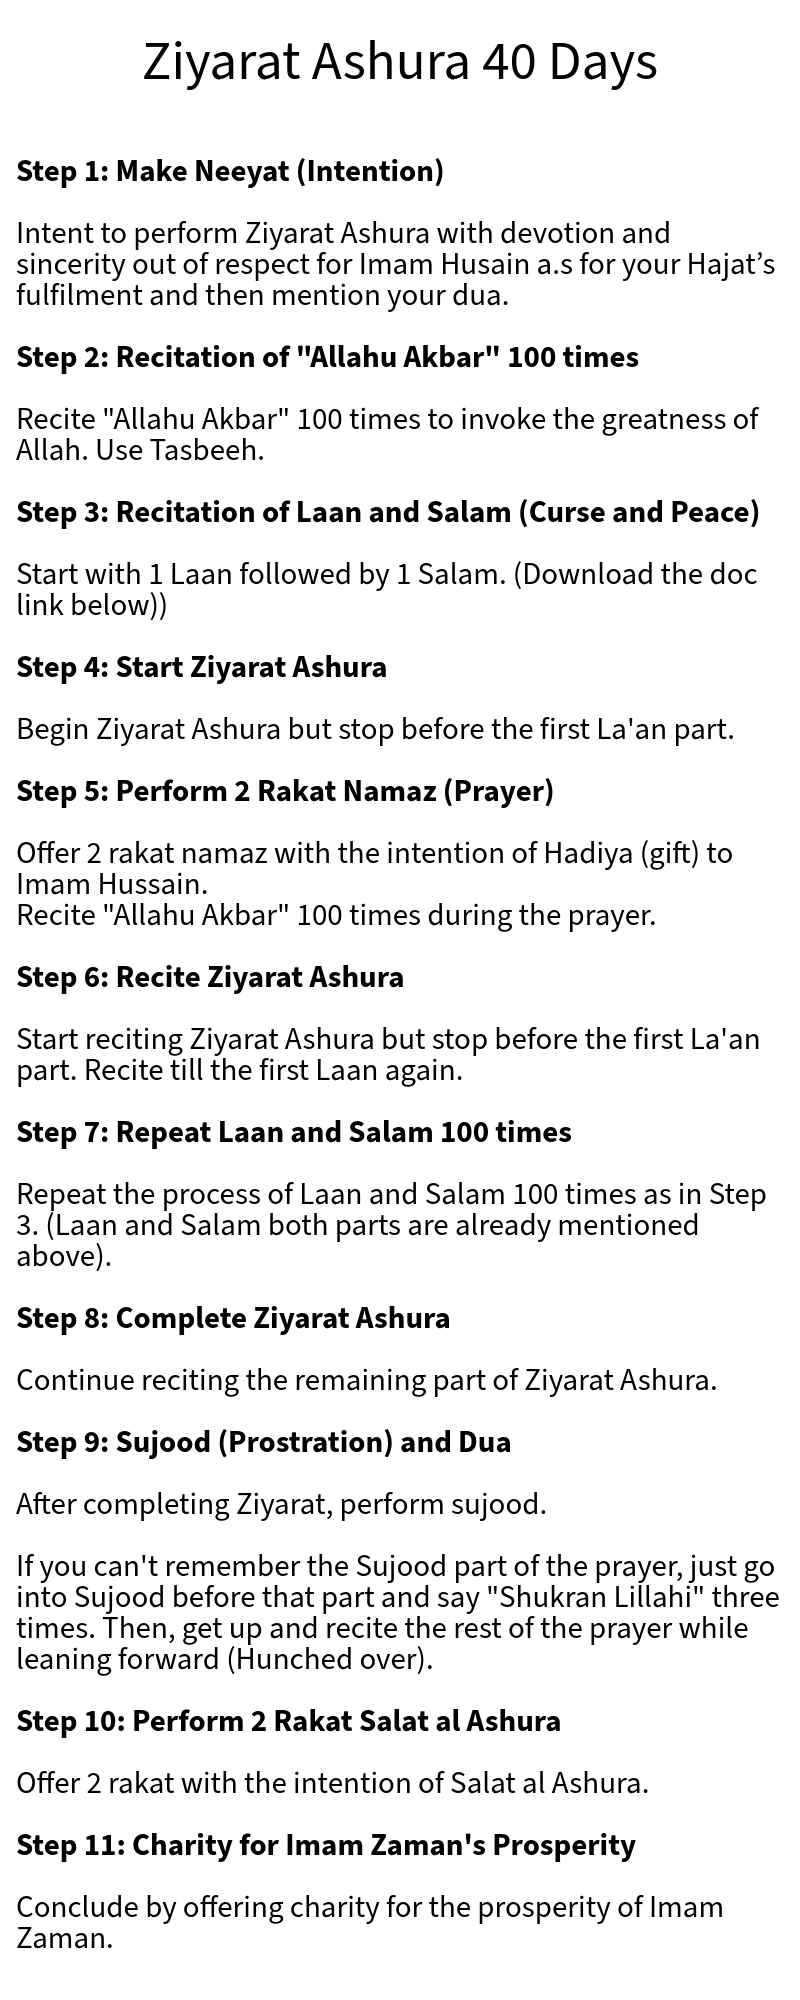 Ziyarat ashura for 40 days